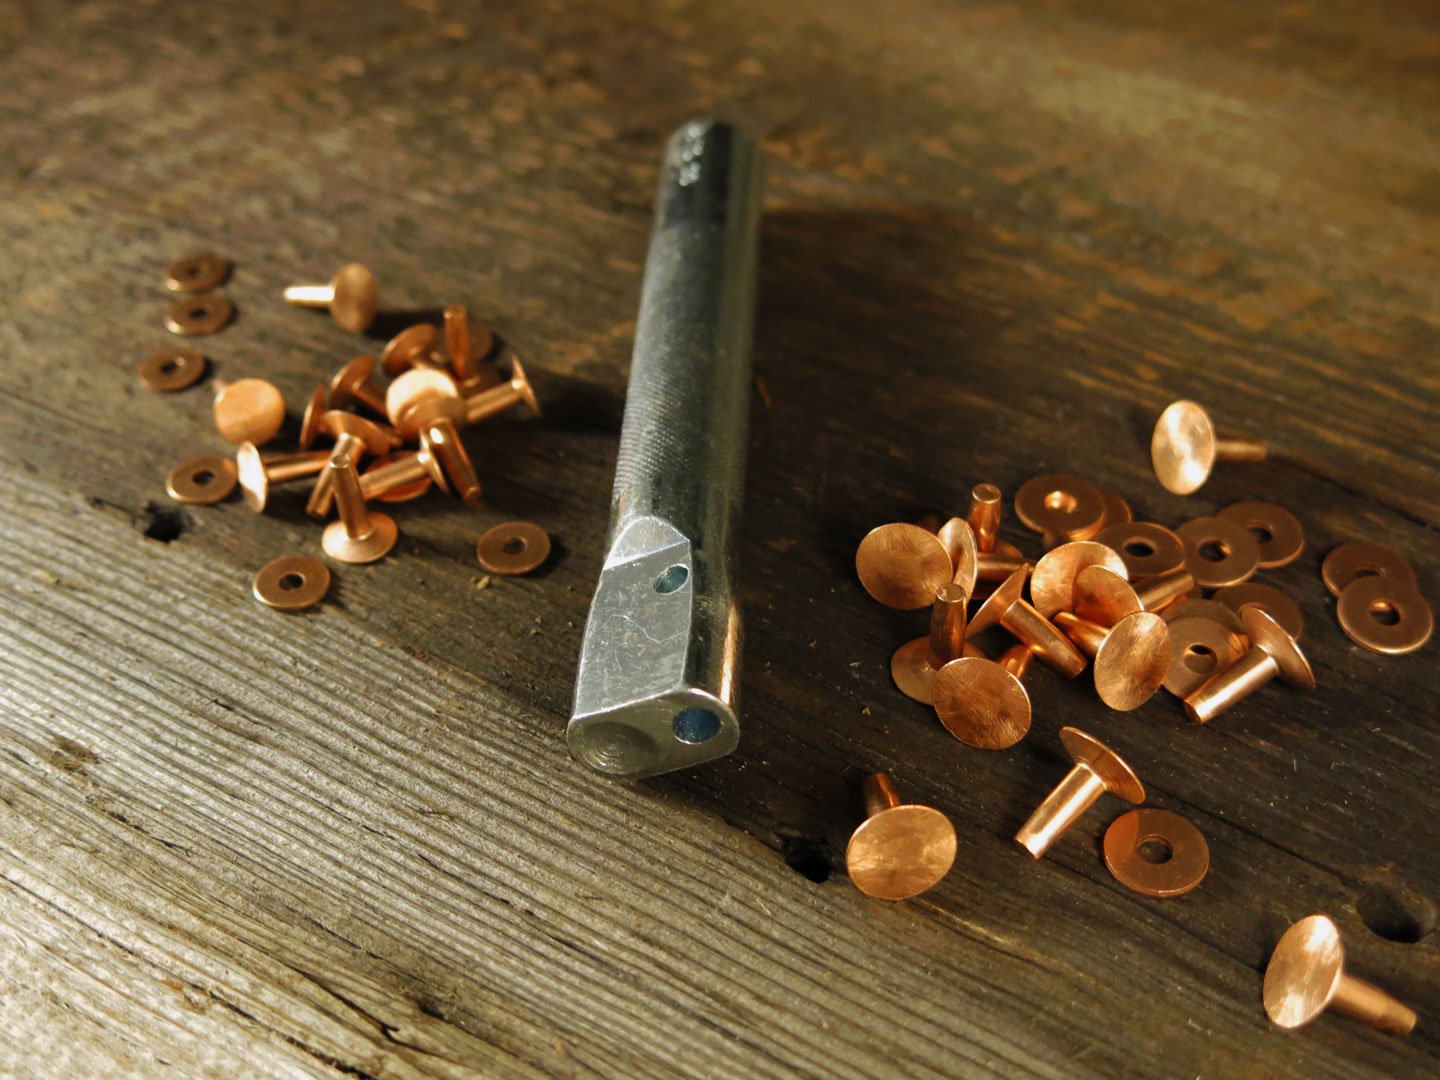 Copper Rivet Kit - Copper Rivet Setter and Rivets